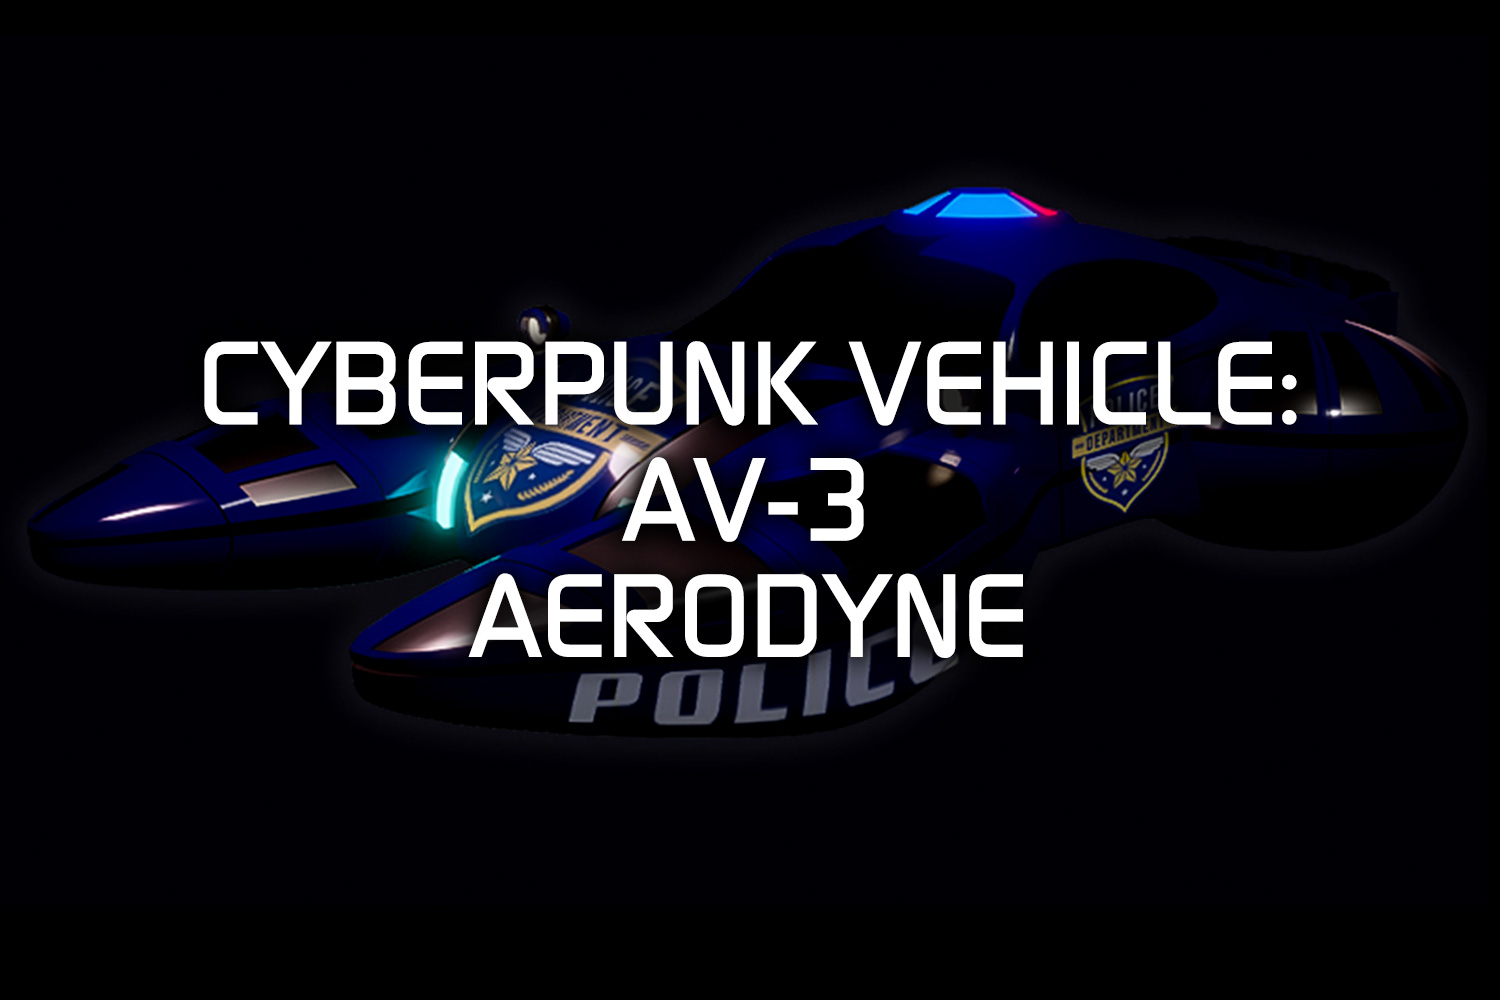 AV-3 AERODYNE